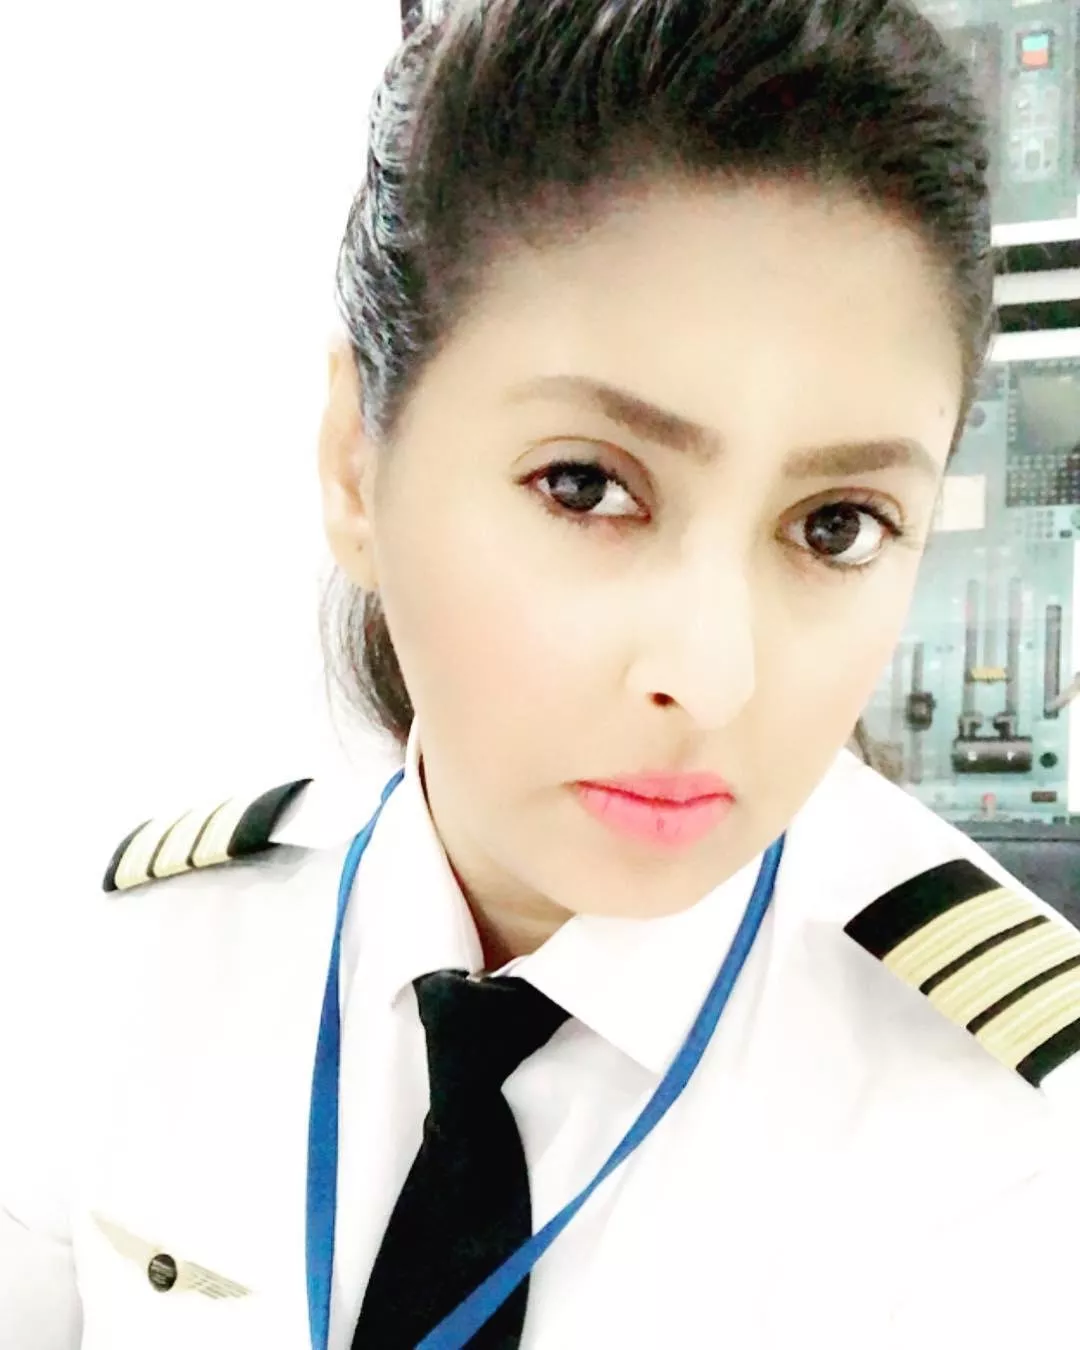 ياسمين الميمني تحقق حلمها وتصبح أول كابتن سعودية تقود الطائرة في المملكة العربية السعودية